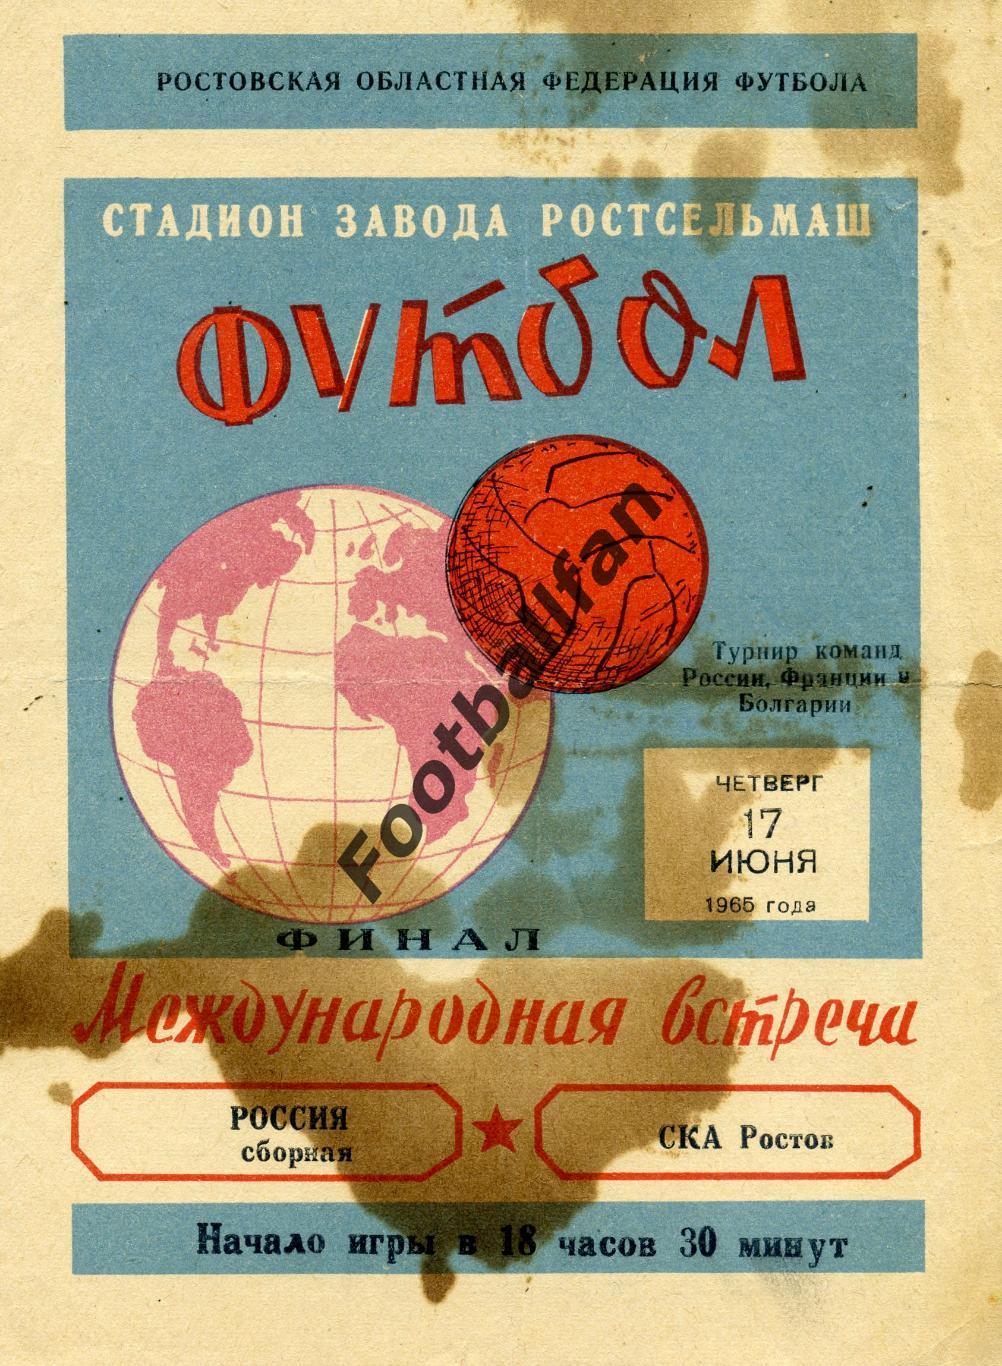 Сборная Россия - СКА Ростов 17.06.1965 Финал